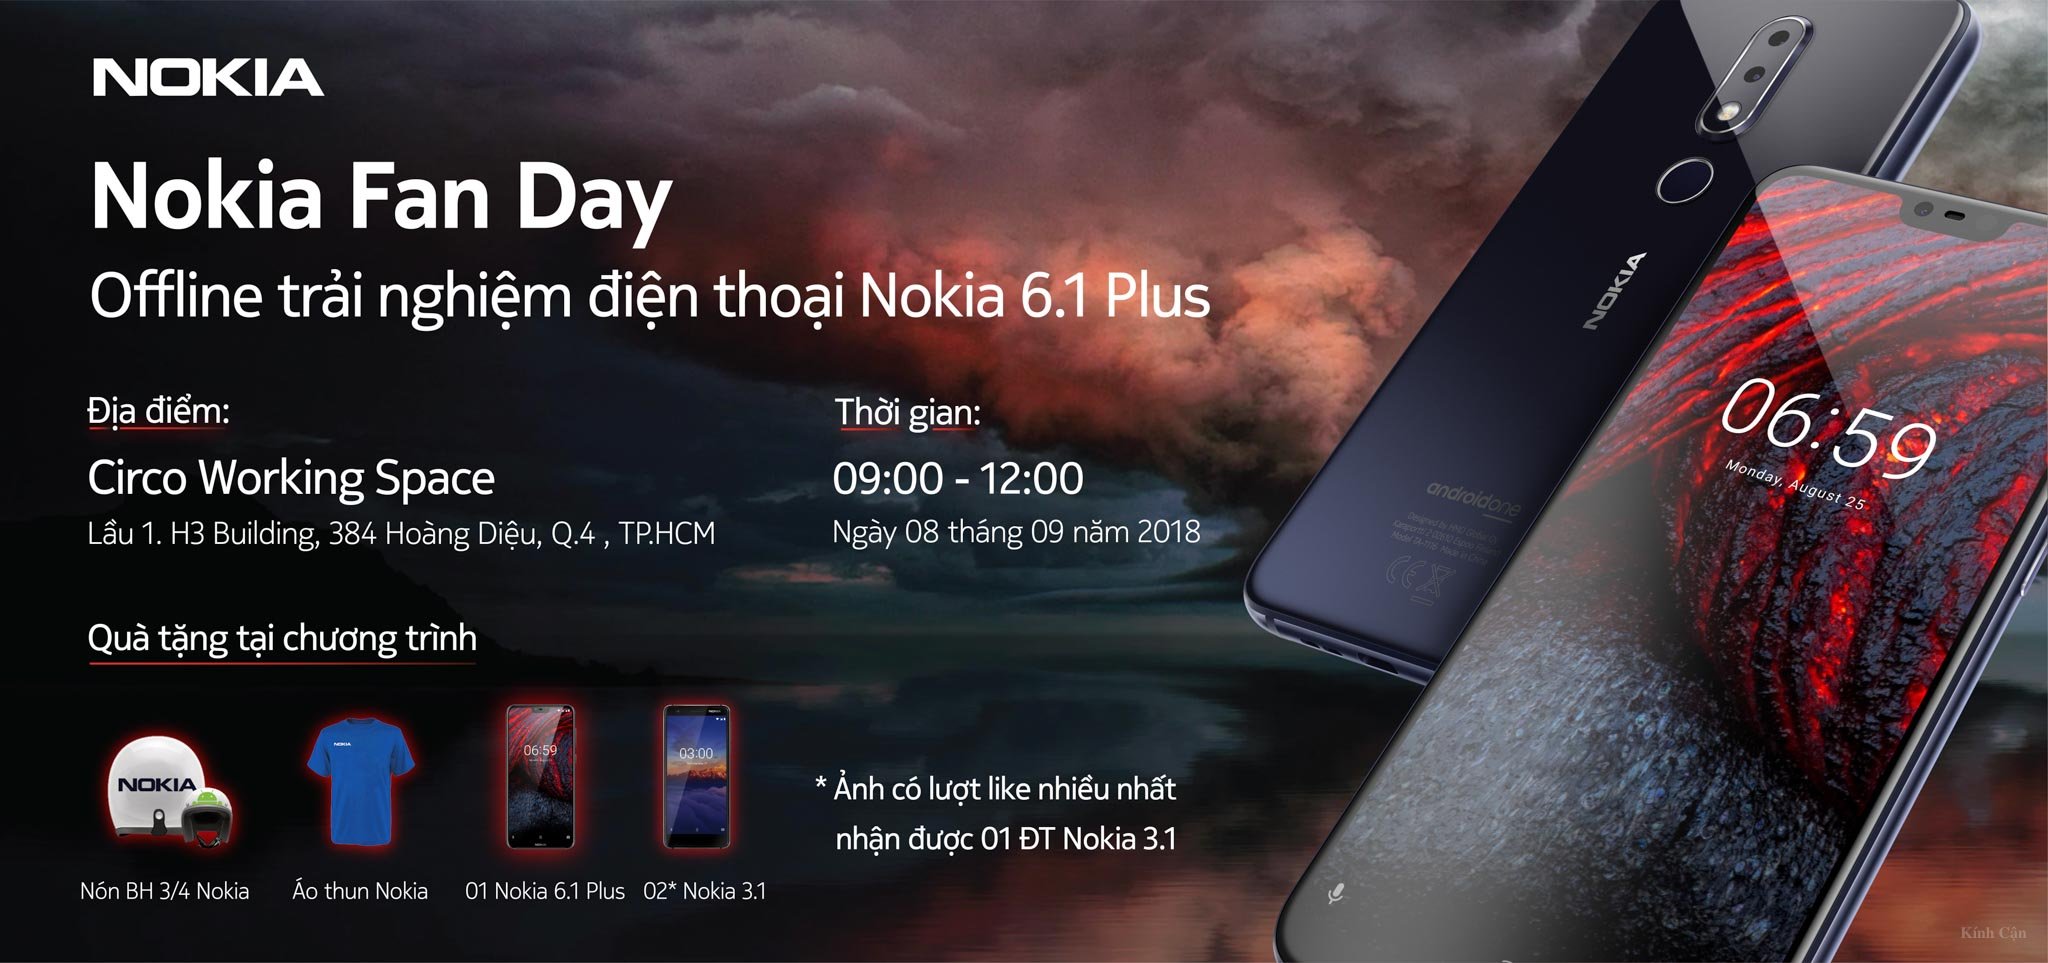 Mời đăng ký Nokia Fan Day: offline trải nghiệm điện thoại Nokia 6.1 Plus